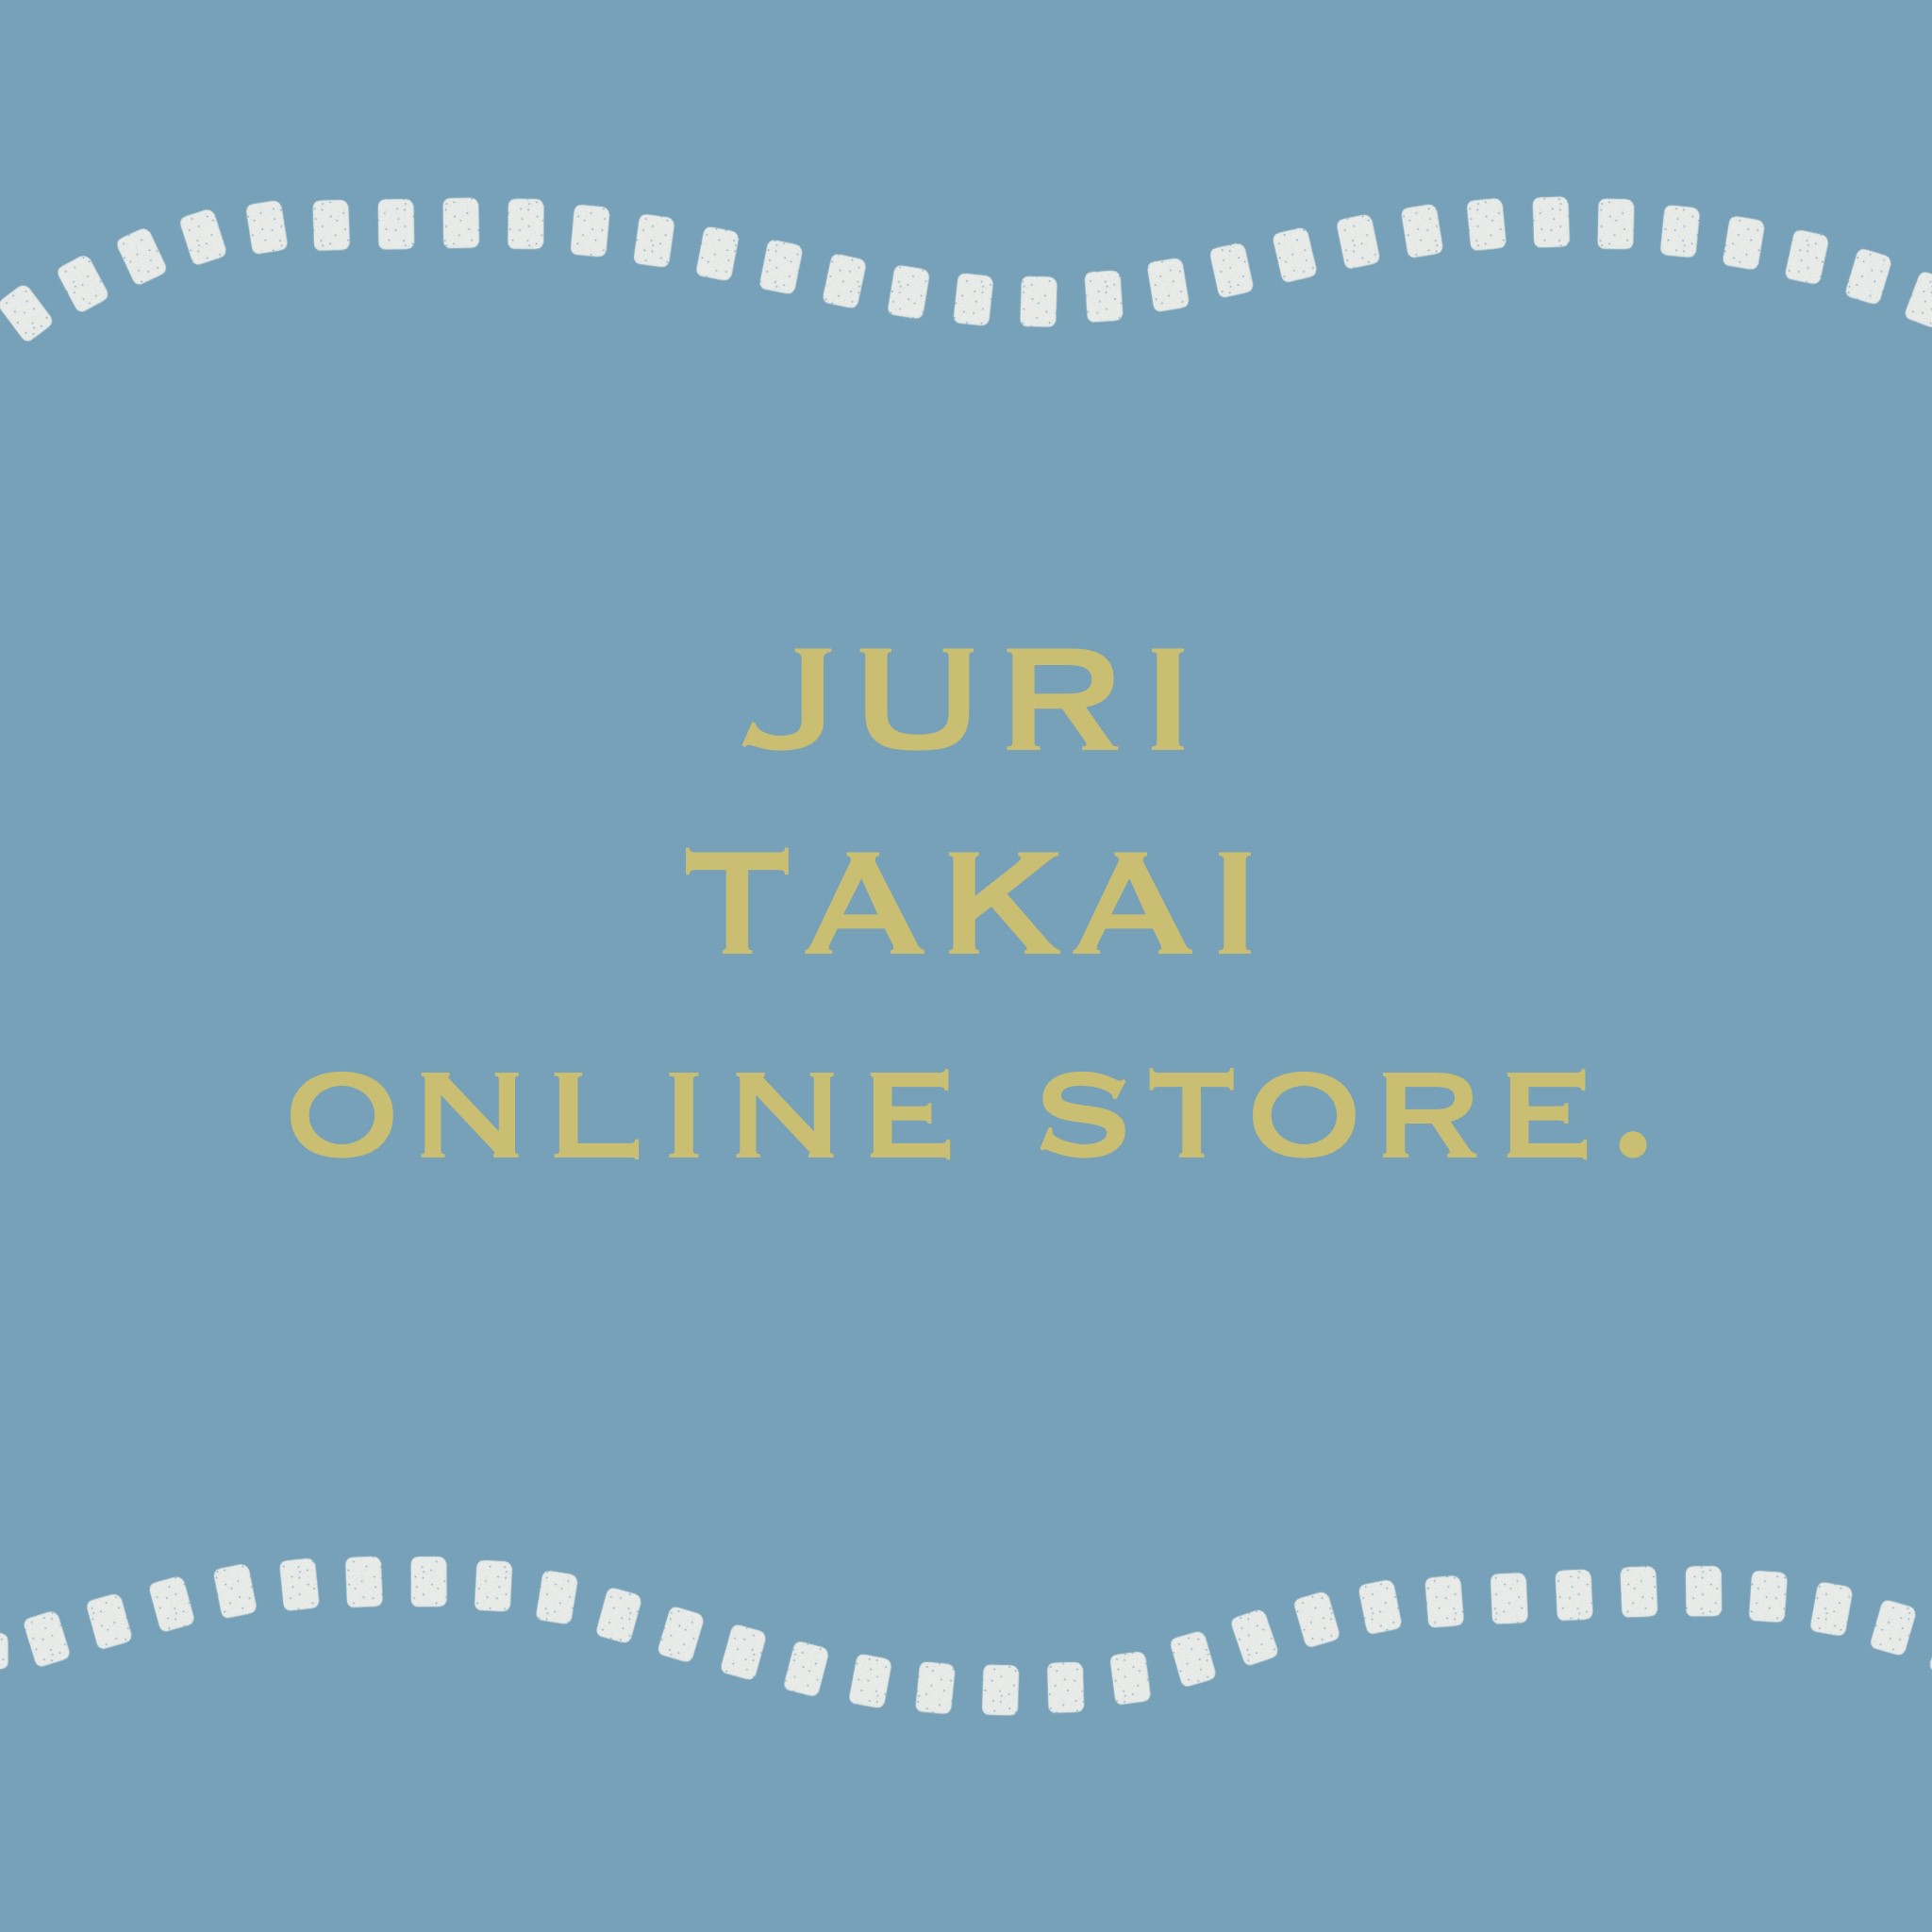 JURI TAKAI online store.